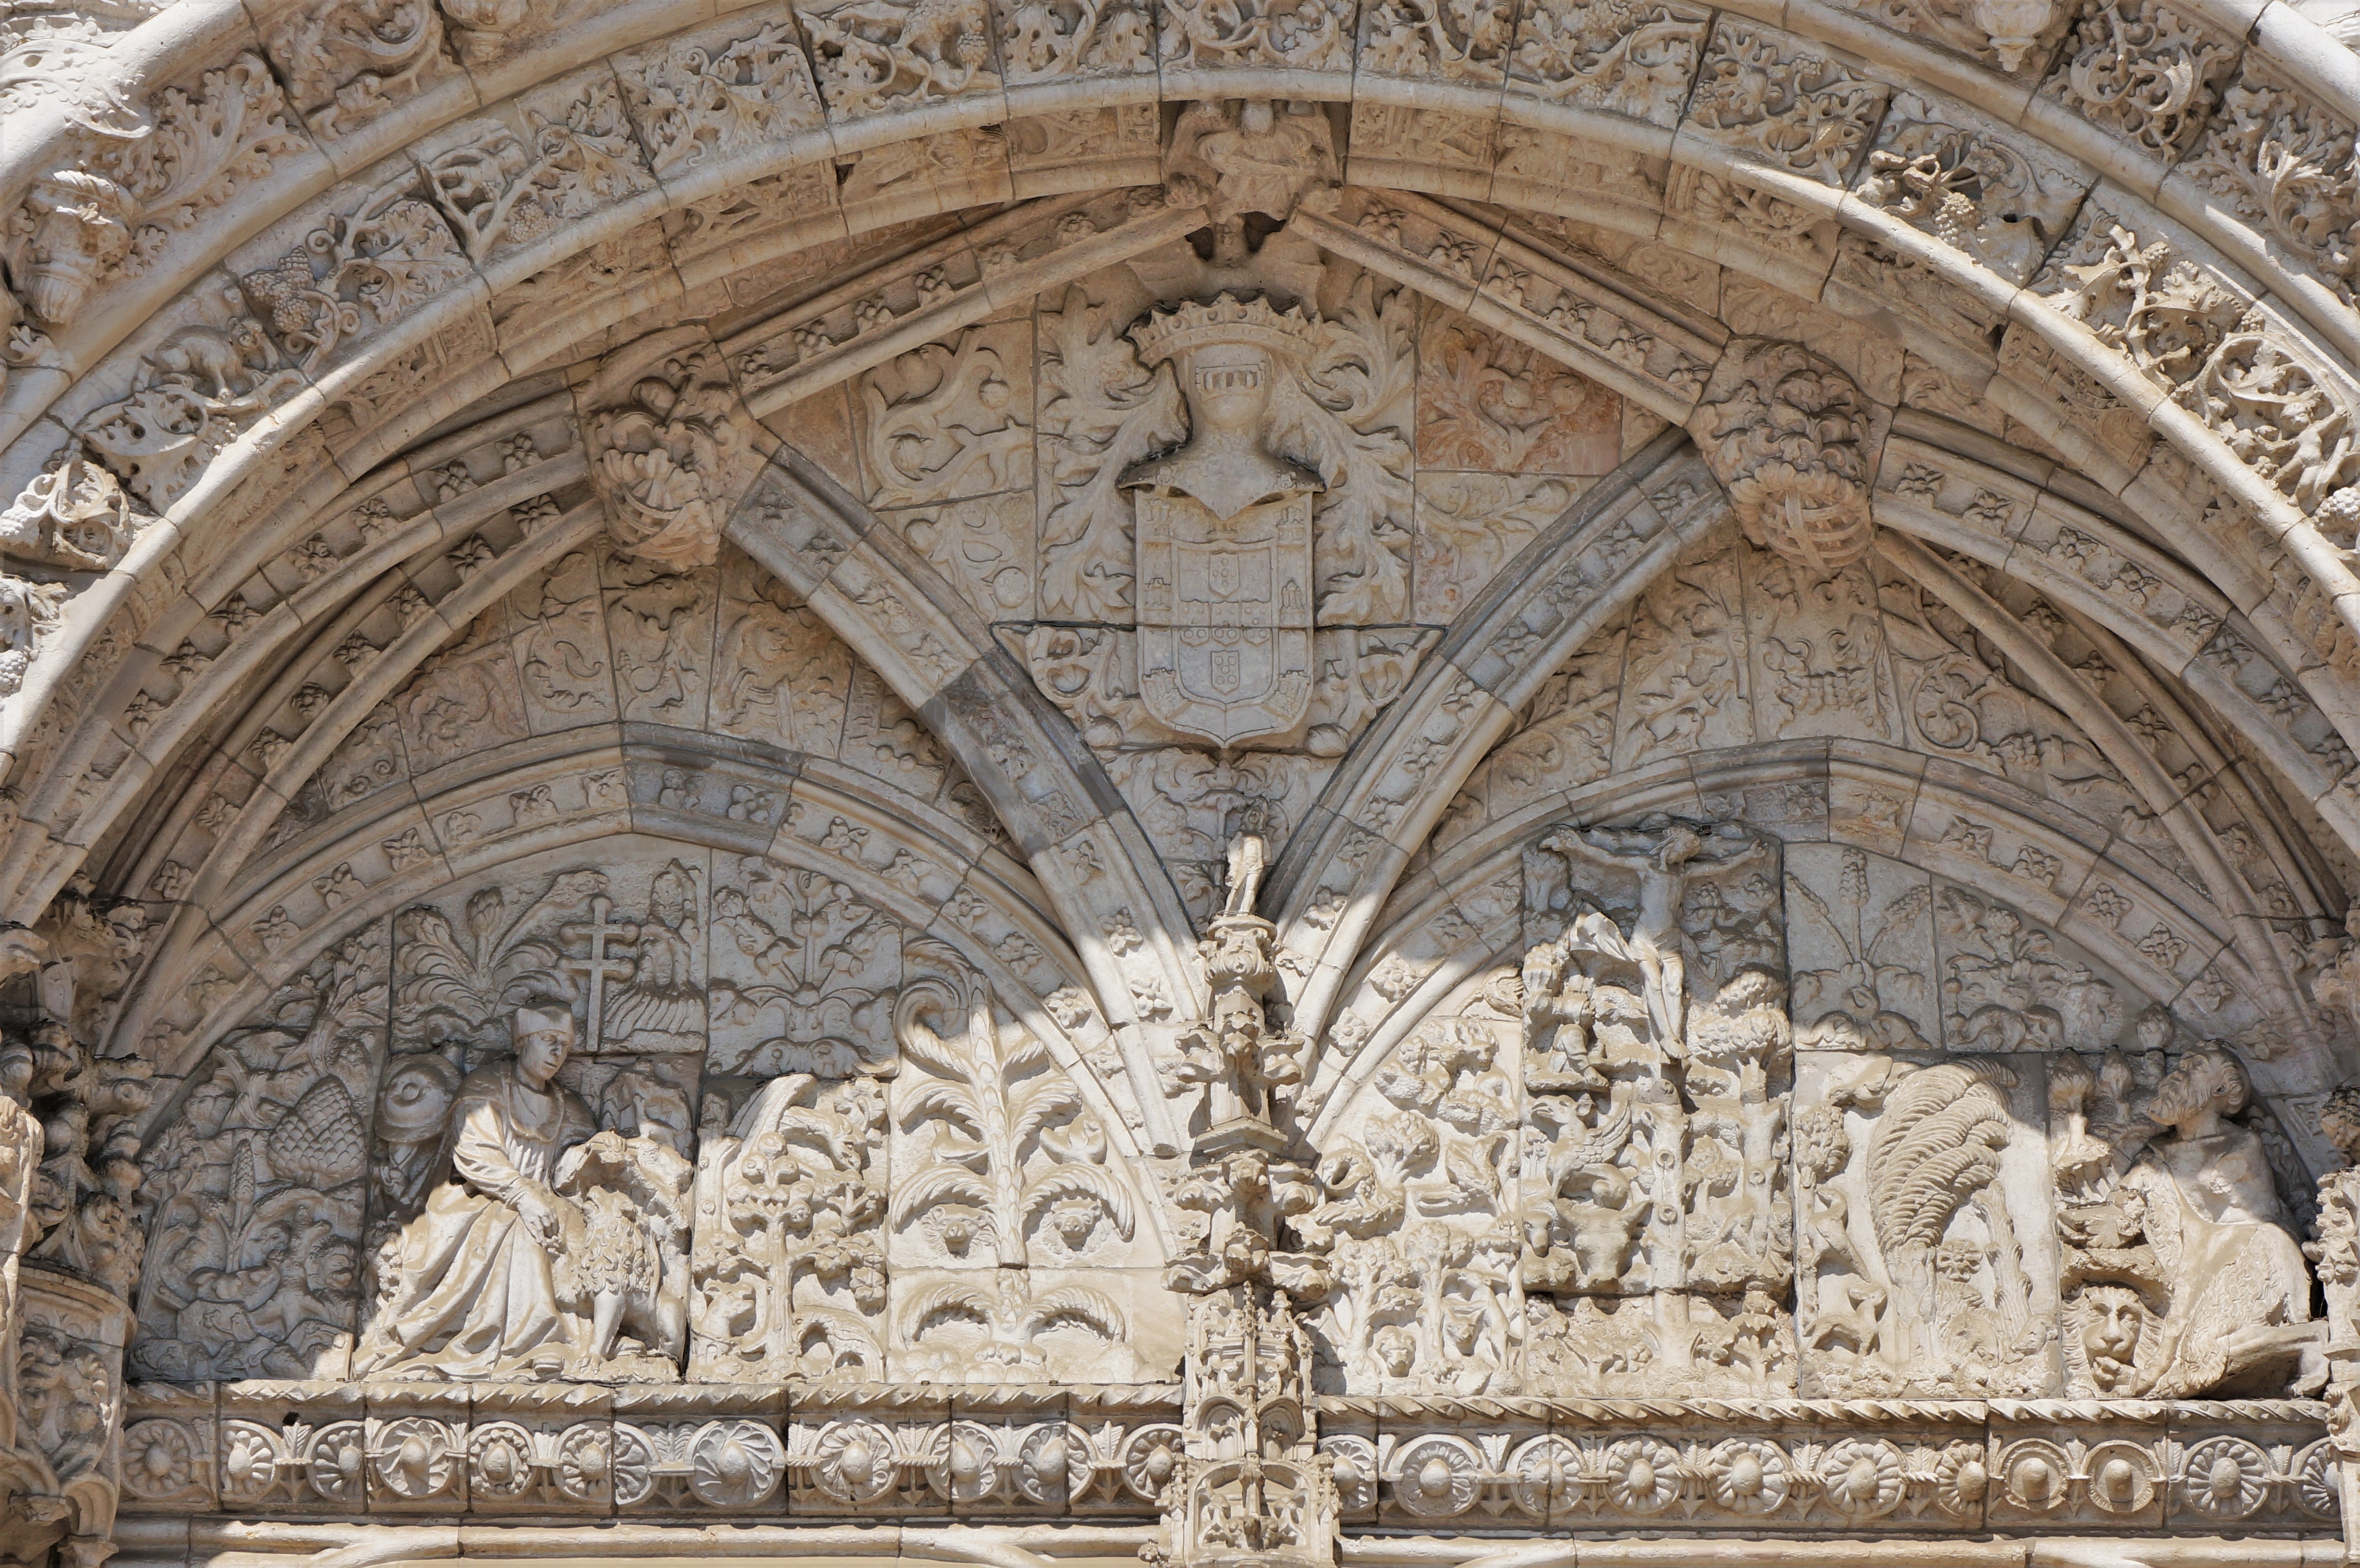 曼努埃尔式建筑王冠上的明珠:里斯本热罗尼莫斯修道院